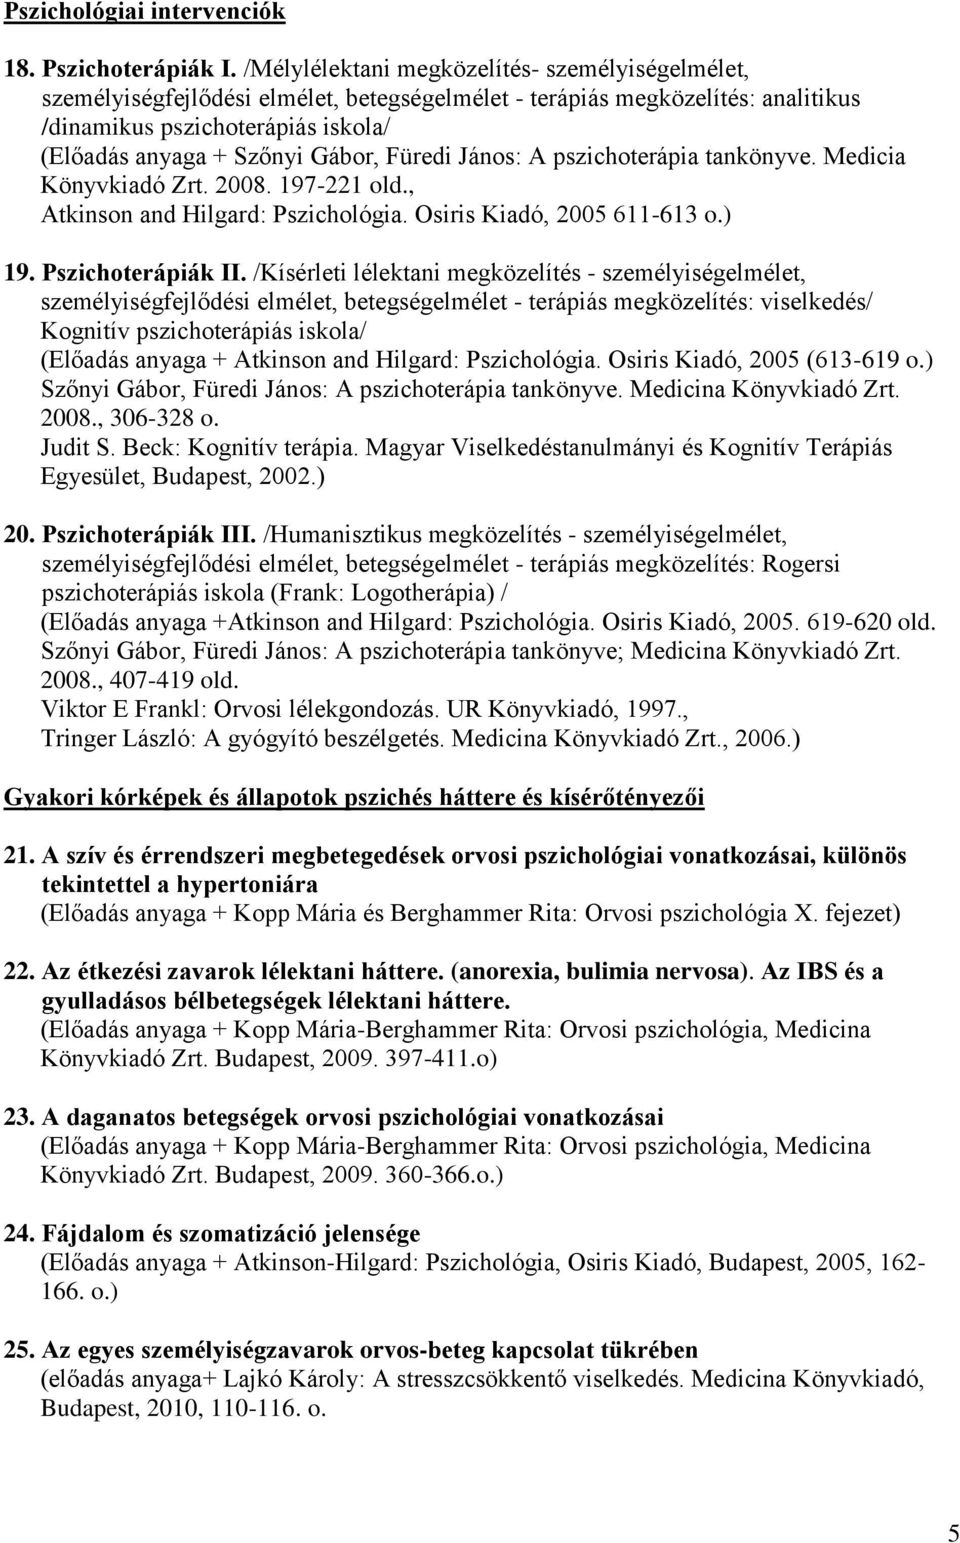 Füredi János: A pszichoterápia tankönyve. Medicia Könyvkiadó Zrt. 2008. 197-221 old., Atkinson and Hilgard: Pszichológia. Osiris Kiadó, 2005 611-613 o.) 19. Pszichoterápiák II.